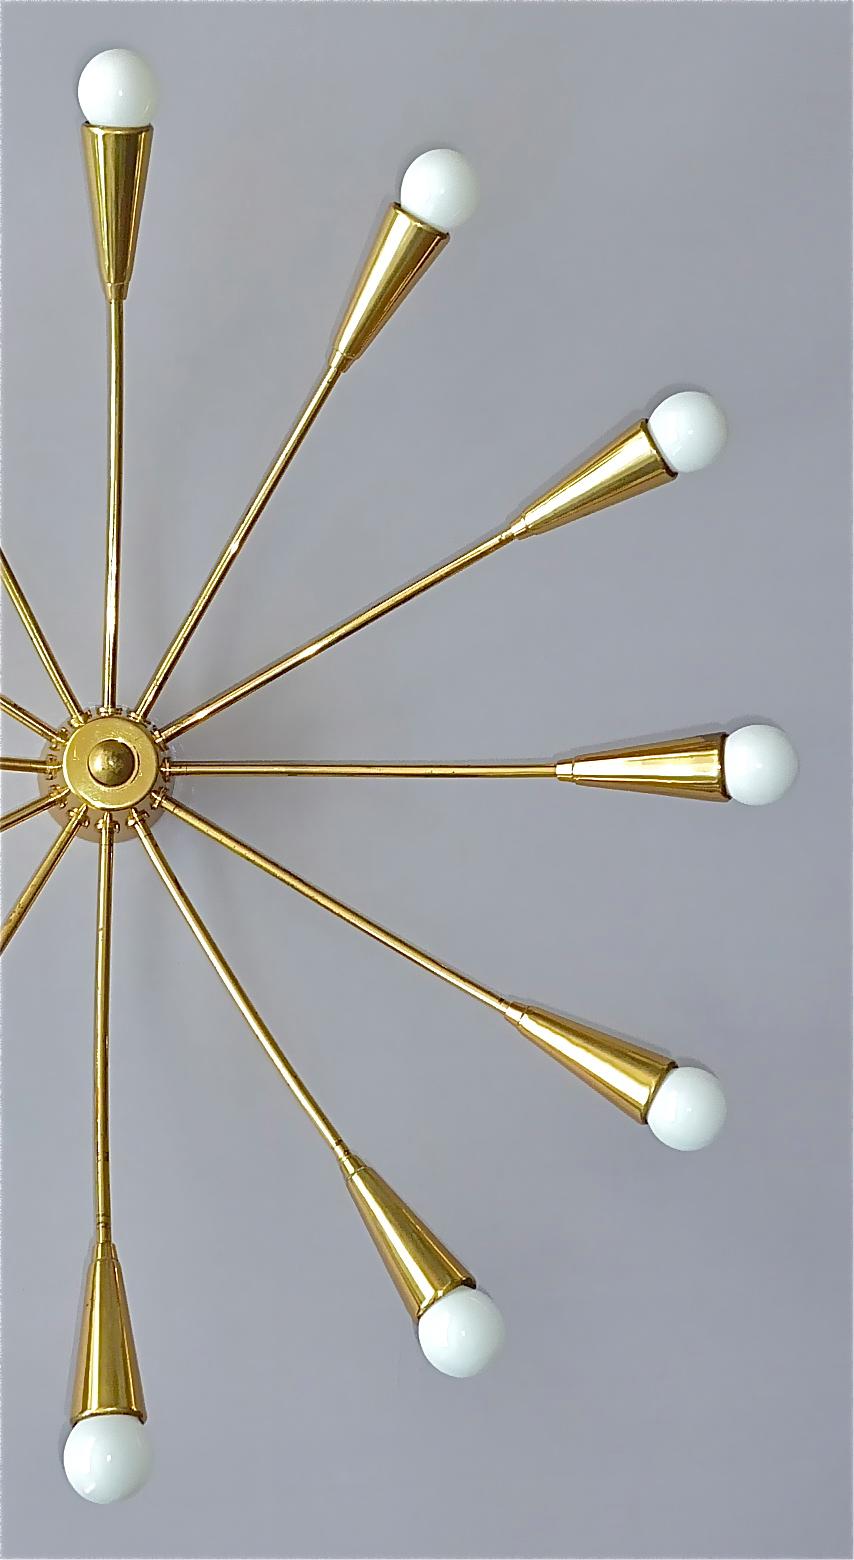 Mid-20th Century Large Midcentury Sputnik Flush Mount Brass Ceiling Lamp Kaiser Kalmar Stilnovo For Sale